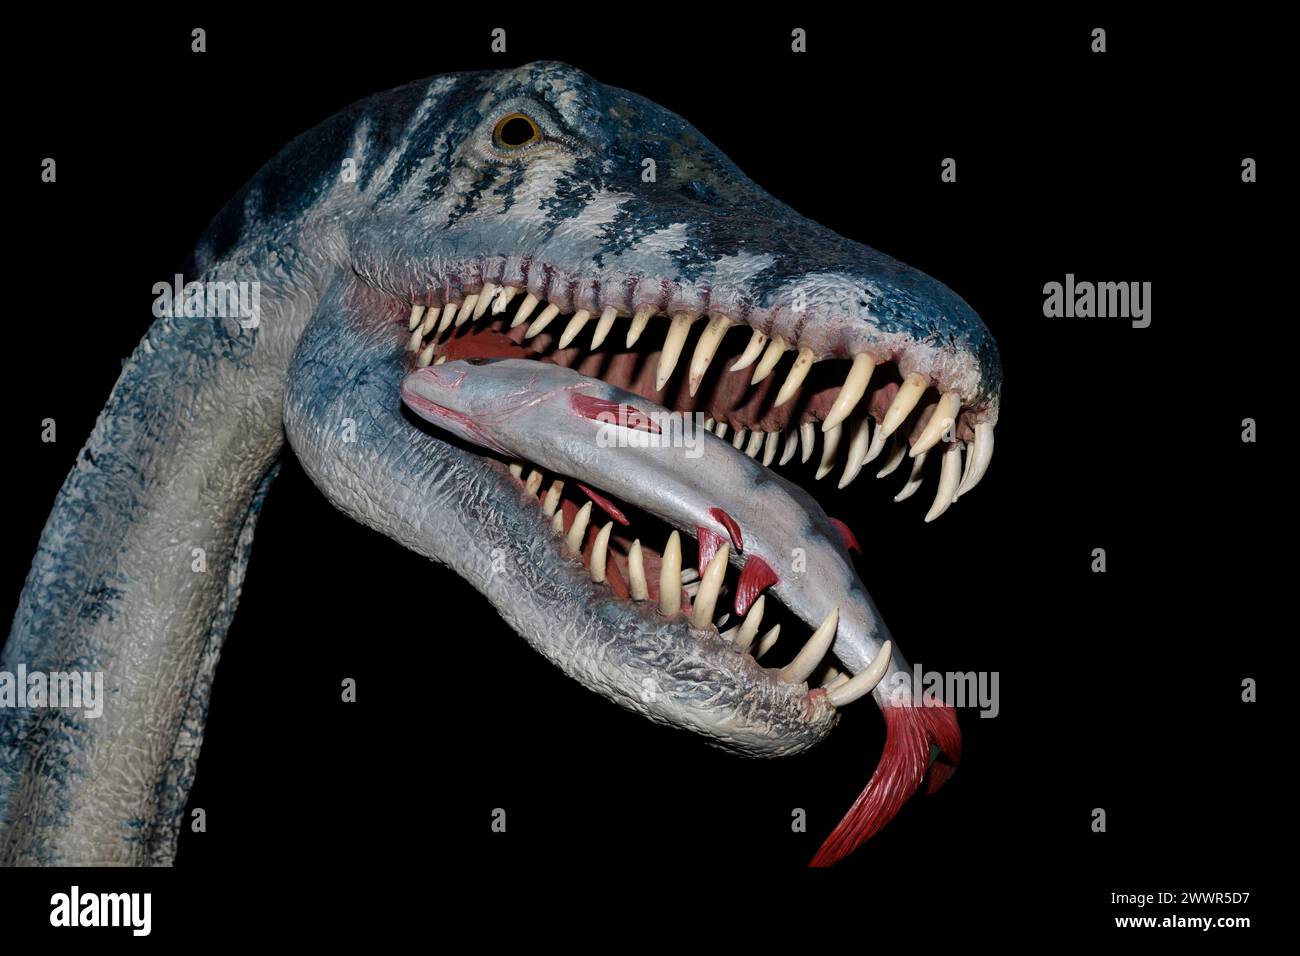 Modelo de Elasmosaurus platyurus. Elasmosaurus era un reptil marino perteneciente a los plesiosaurios. Vivió en el Cretácico superior hace unos 80 millones de años. Foto de stock